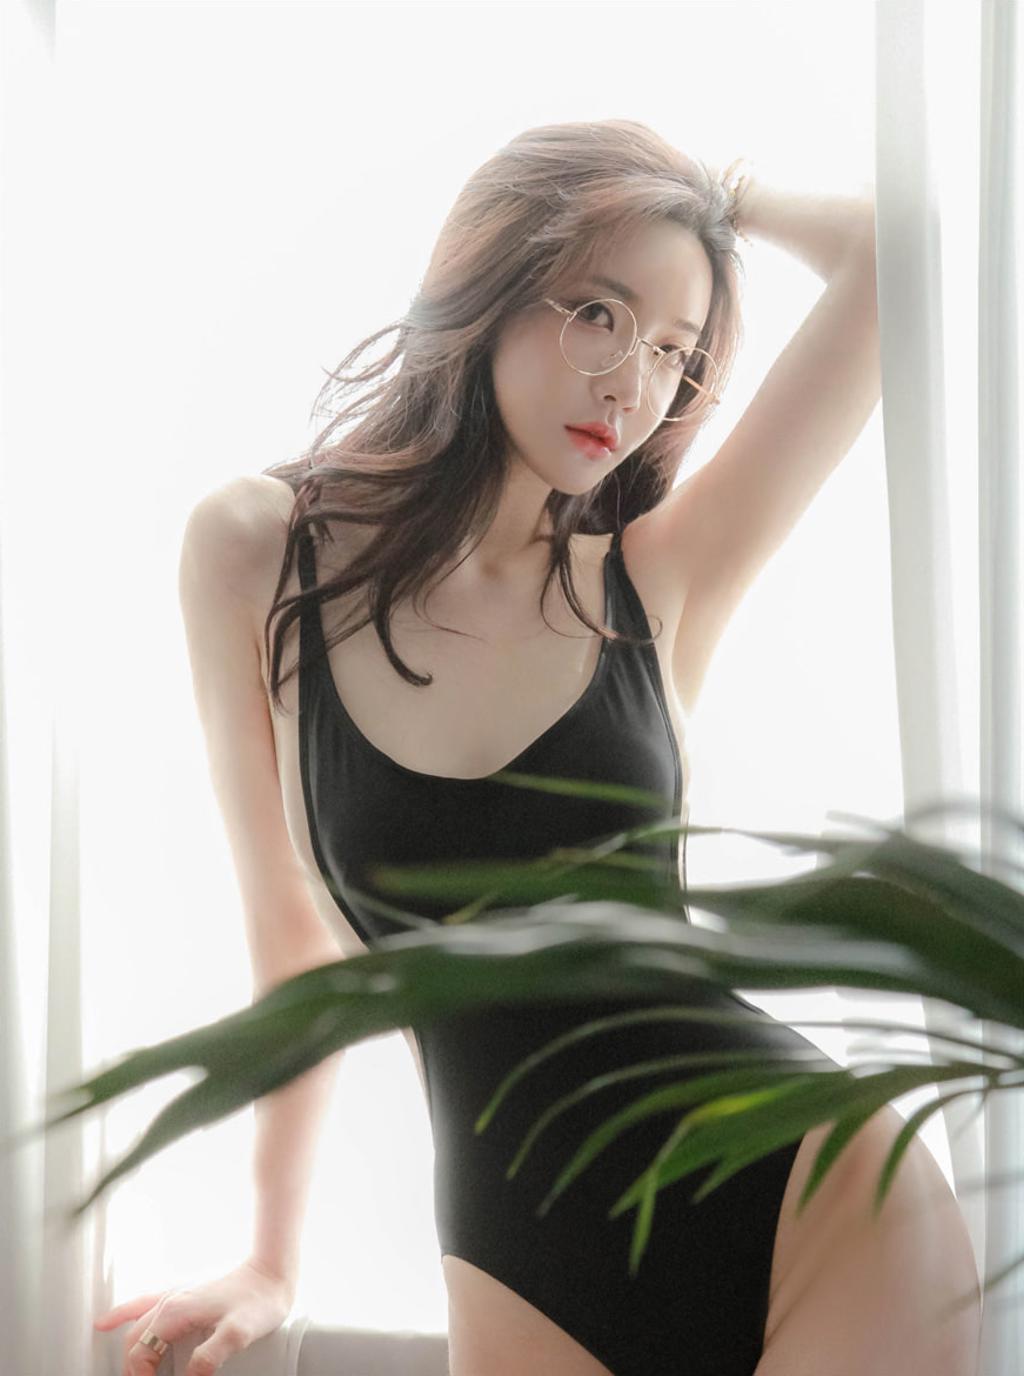 韩国M女模特.韩国美女模特写真集.Thor134